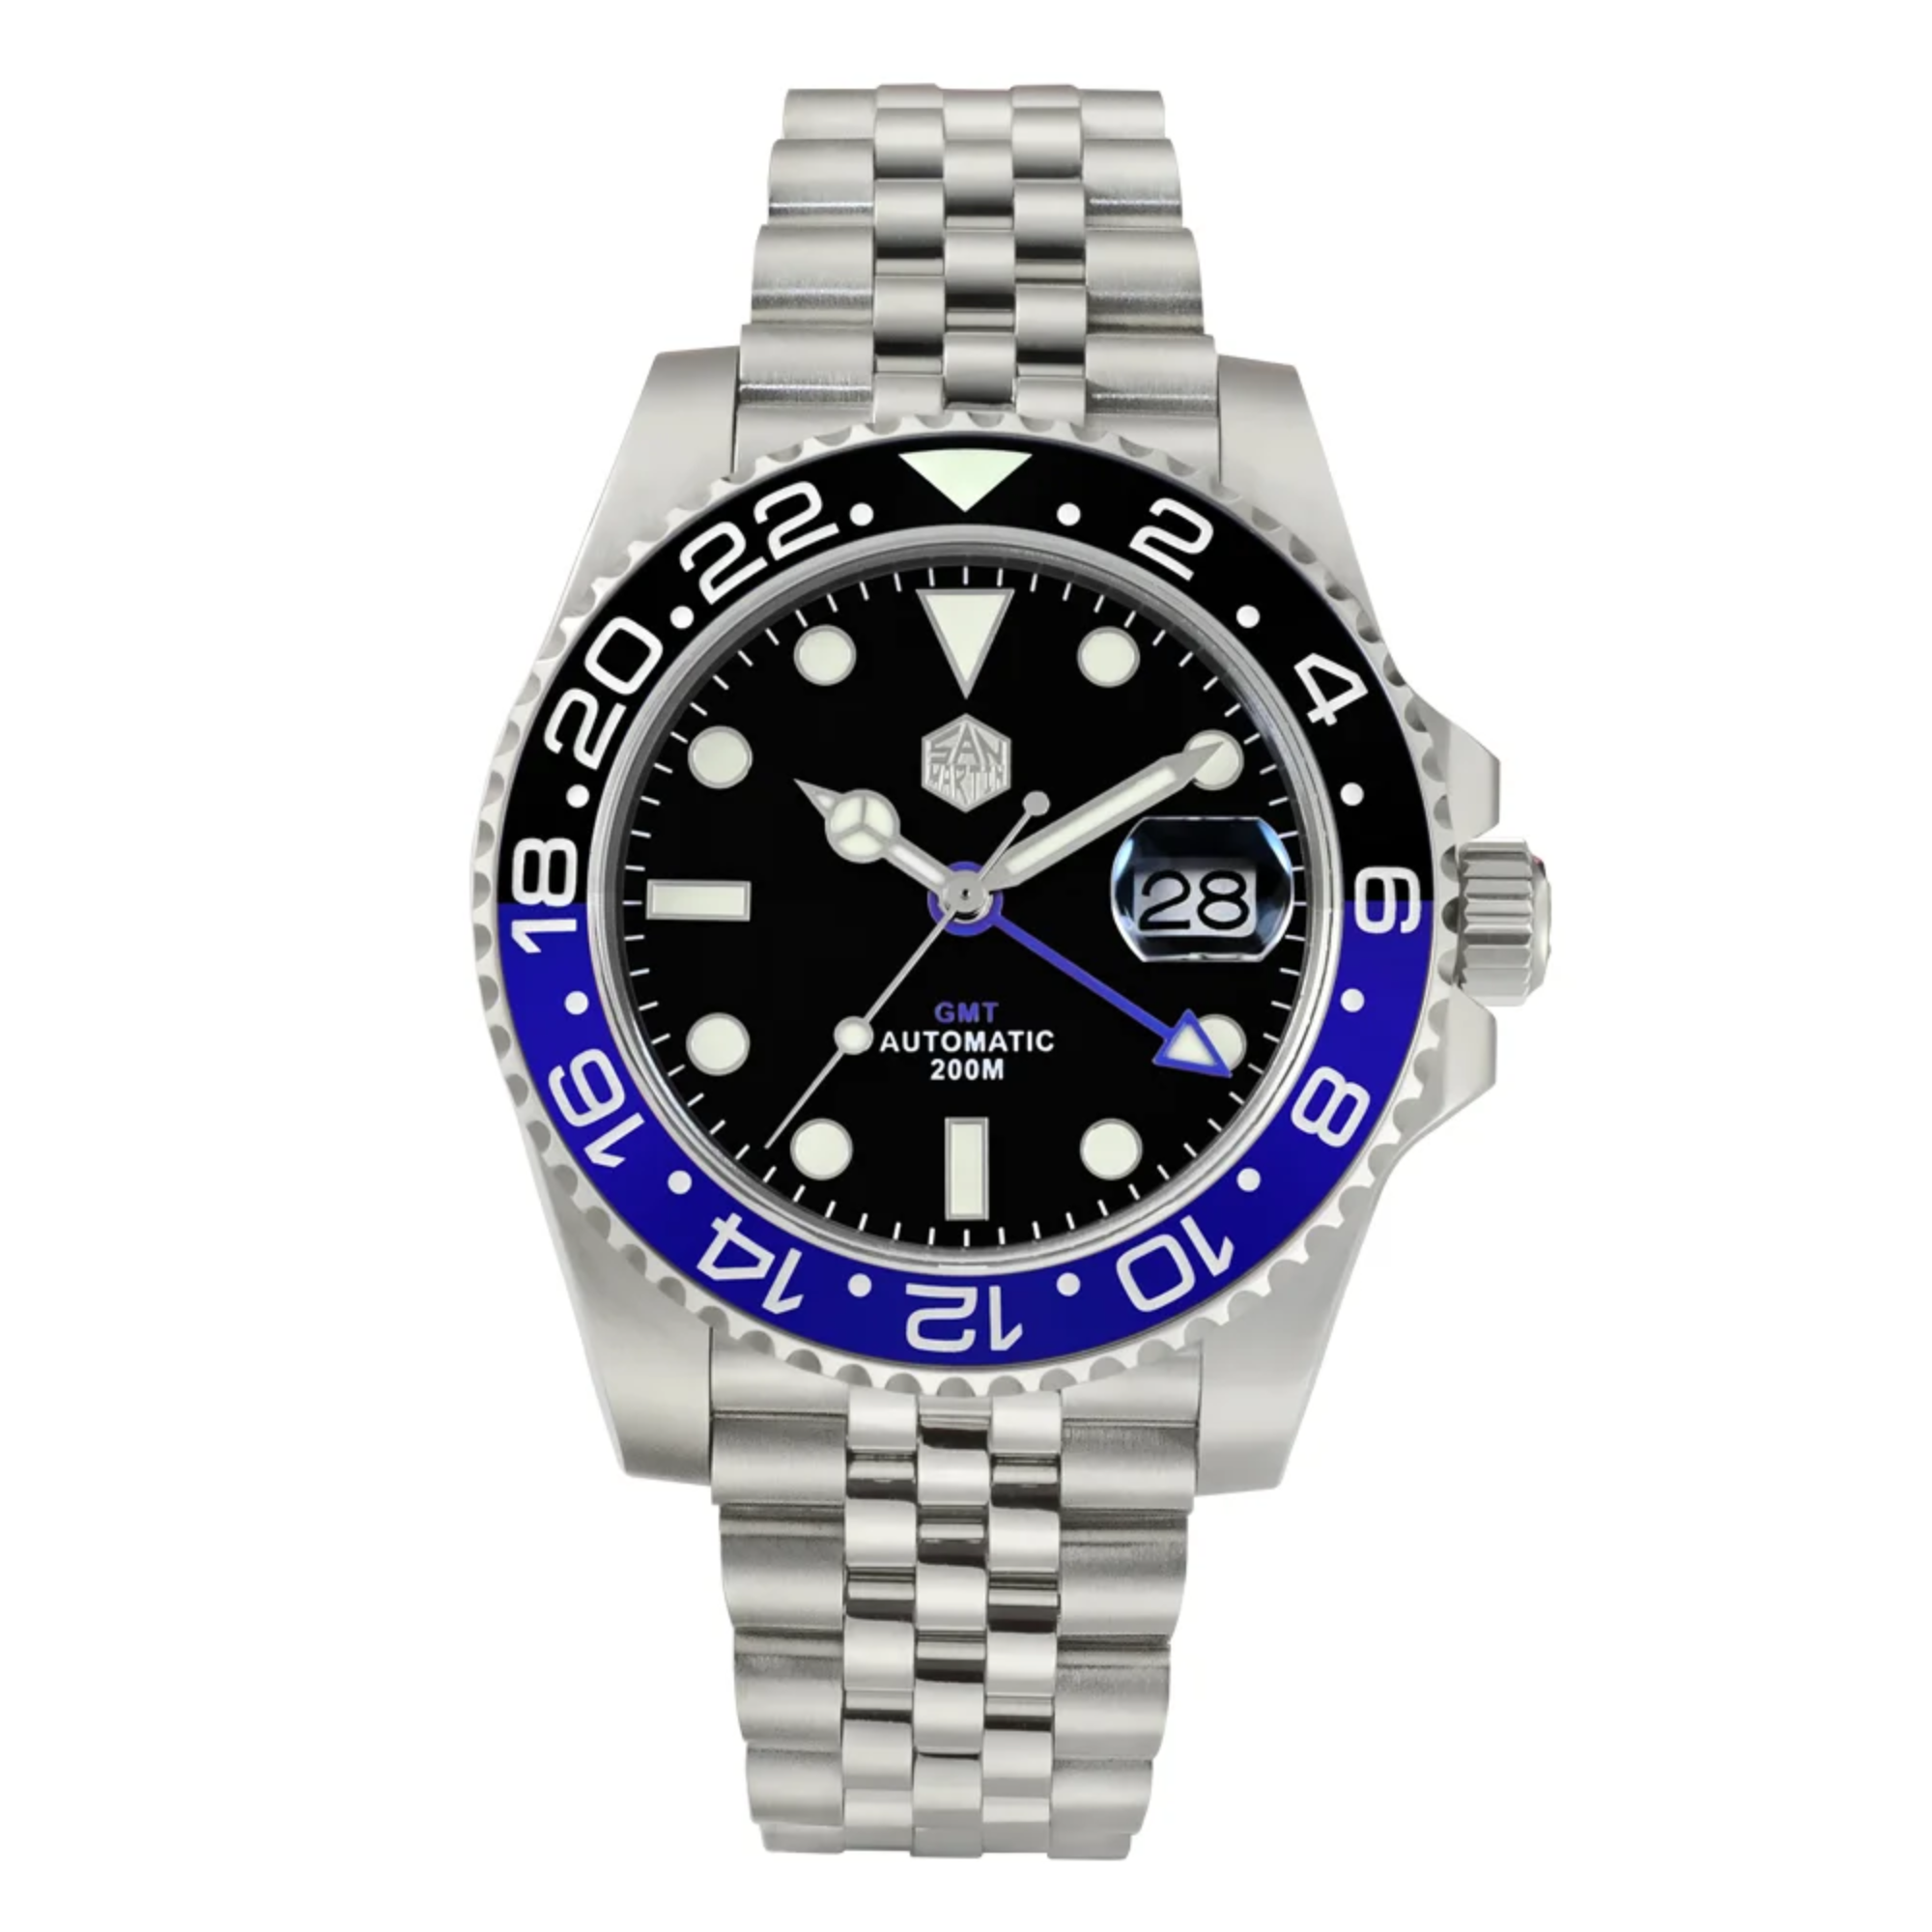 San Martin GMT Luxury Men Watch SN015 - Blue Black san martin watches india online